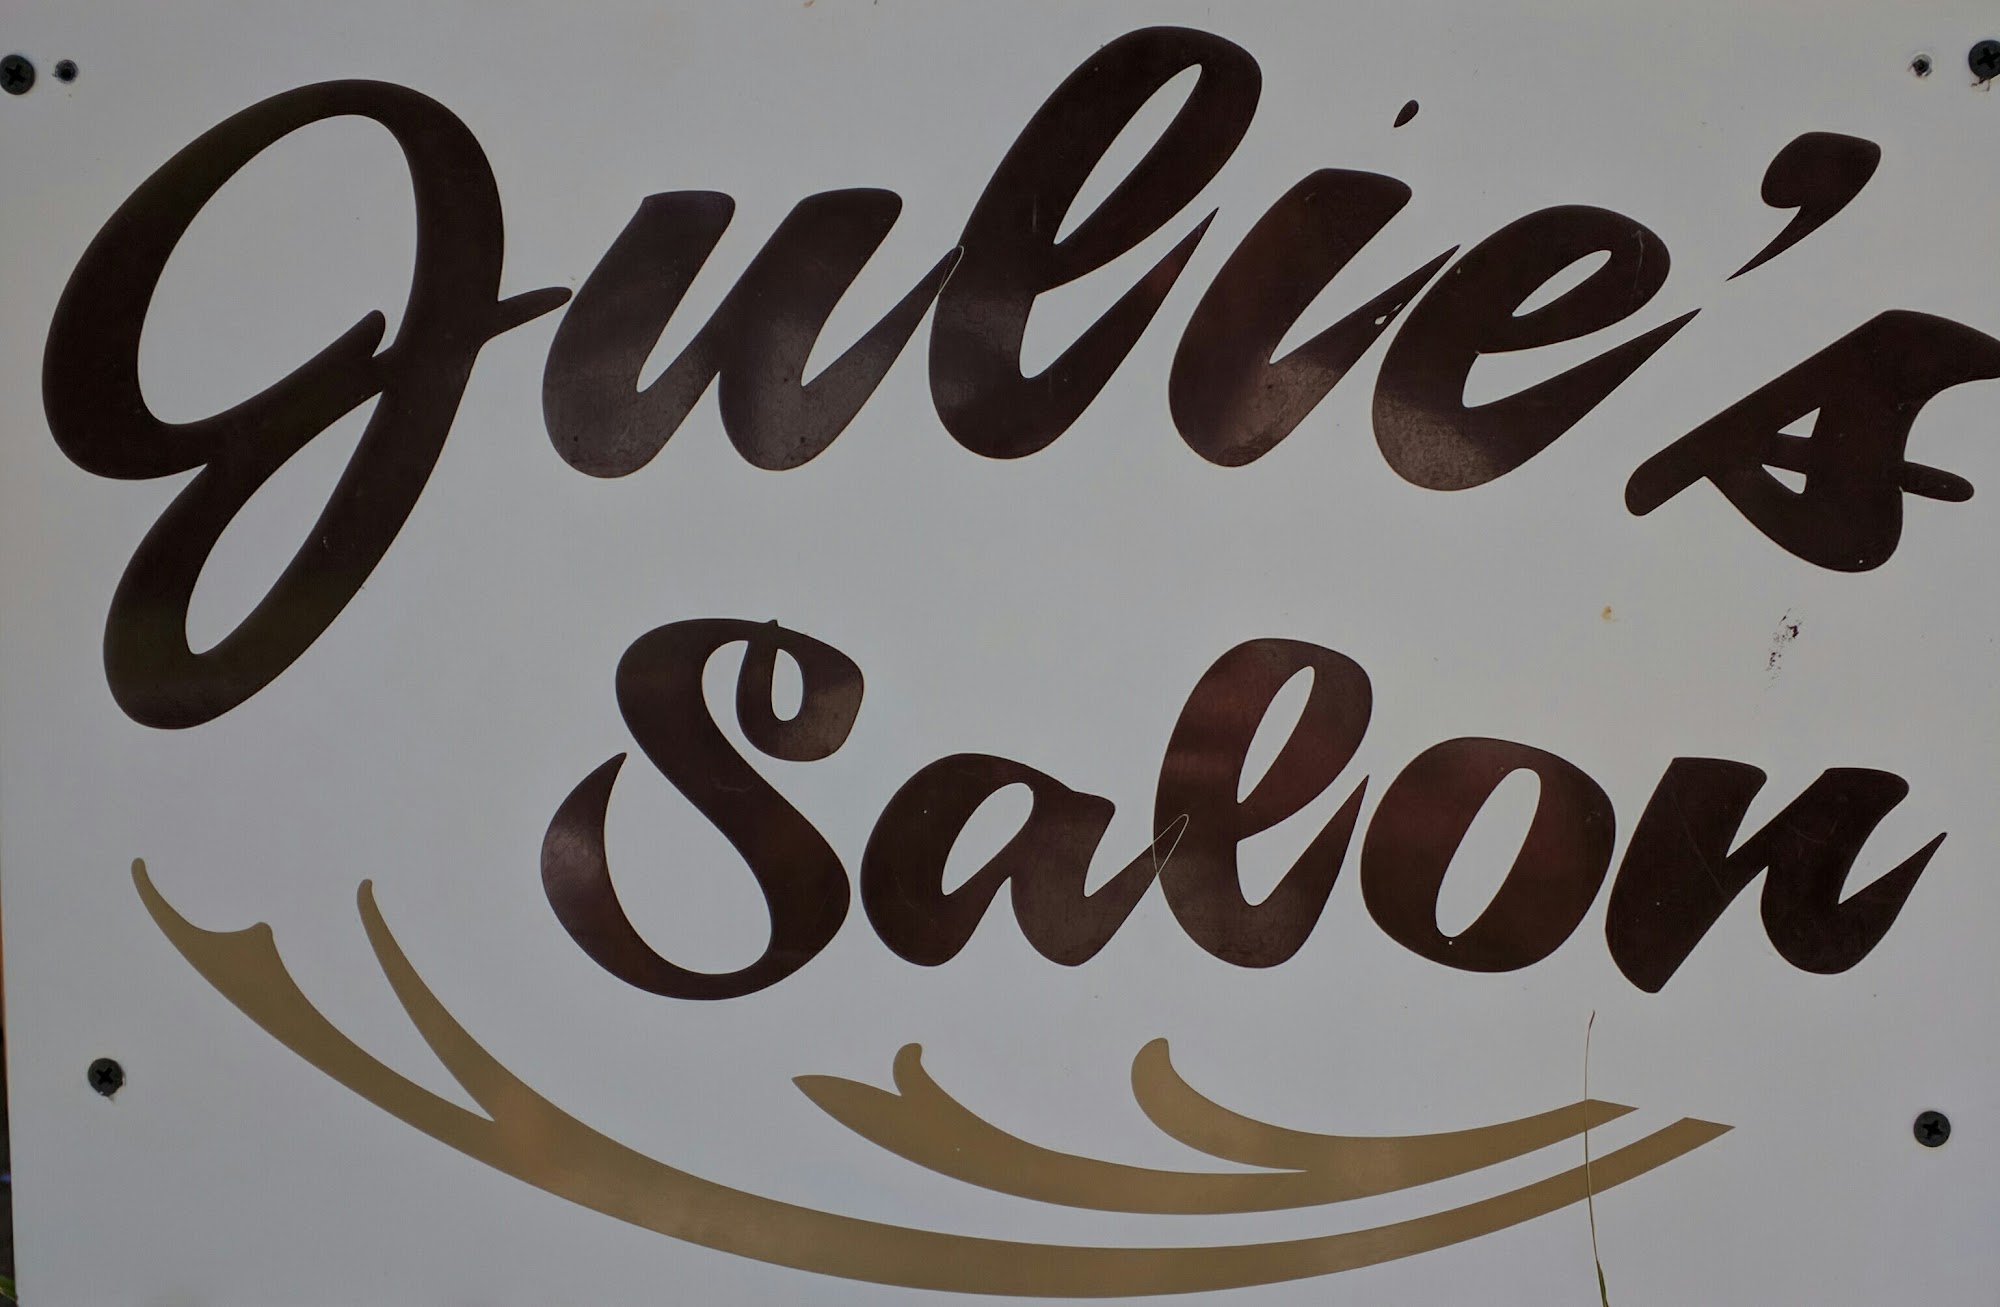 Julie's Salon